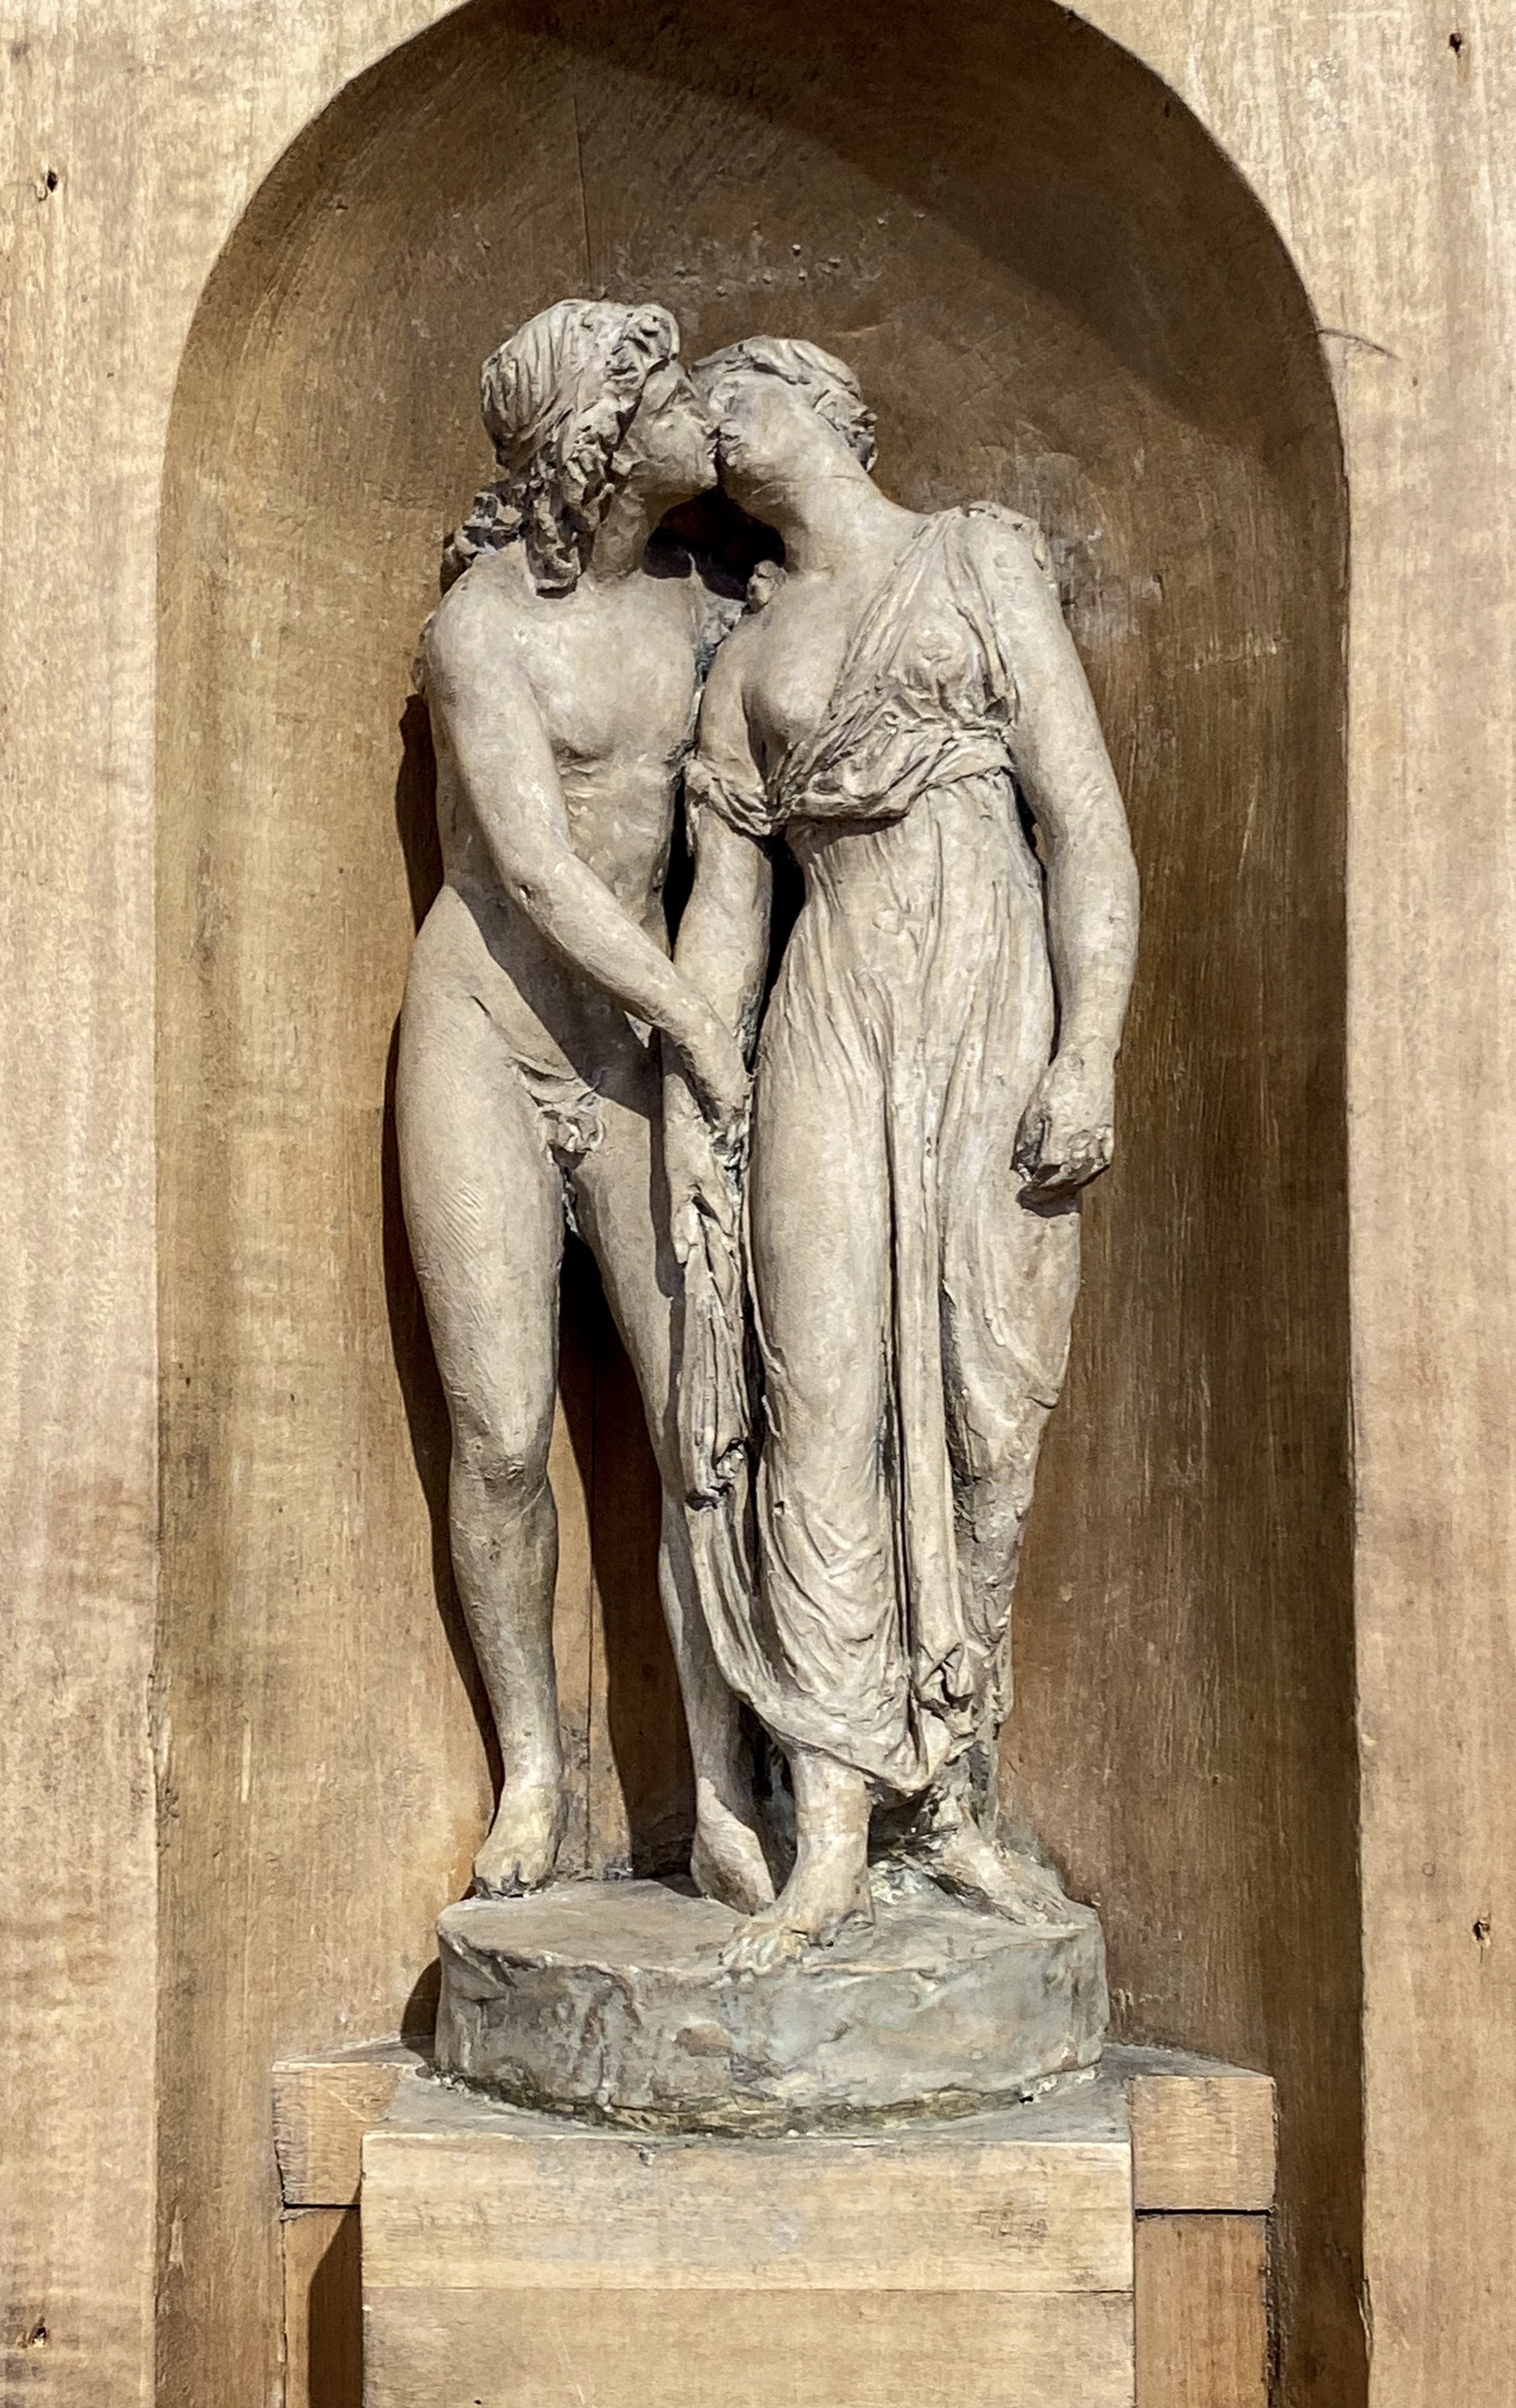 Amor und Psyche Modell aus Rom Staatsgalerie – Ausführung in Stuttgart nicht möglich